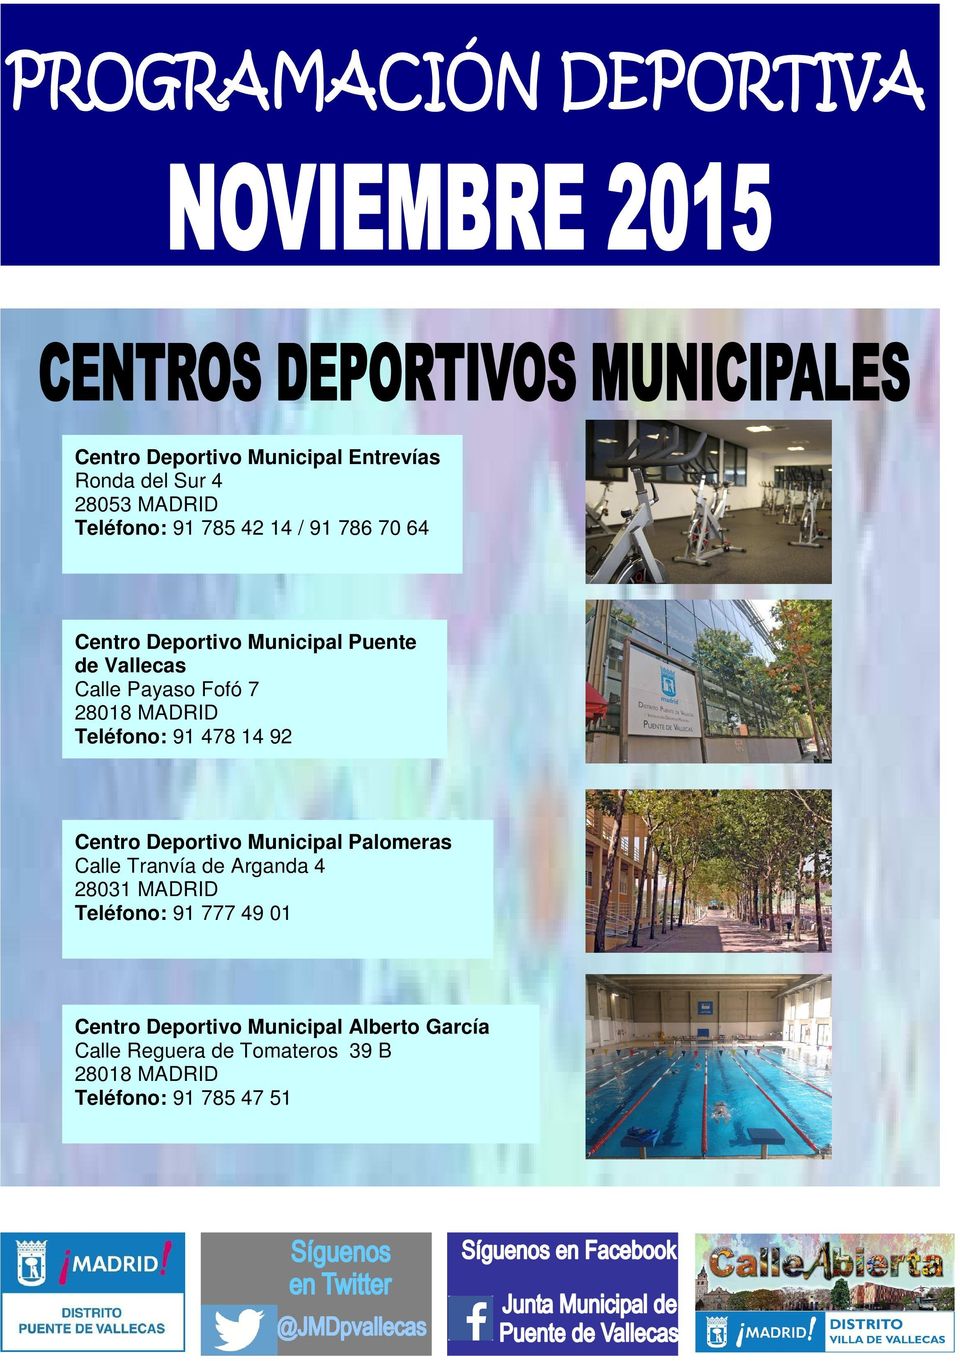 Centro Deportivo Municipal Palomeras Calle Tranvía de Arganda 4 28031 MADRID Teléfono: 91 777 49 01